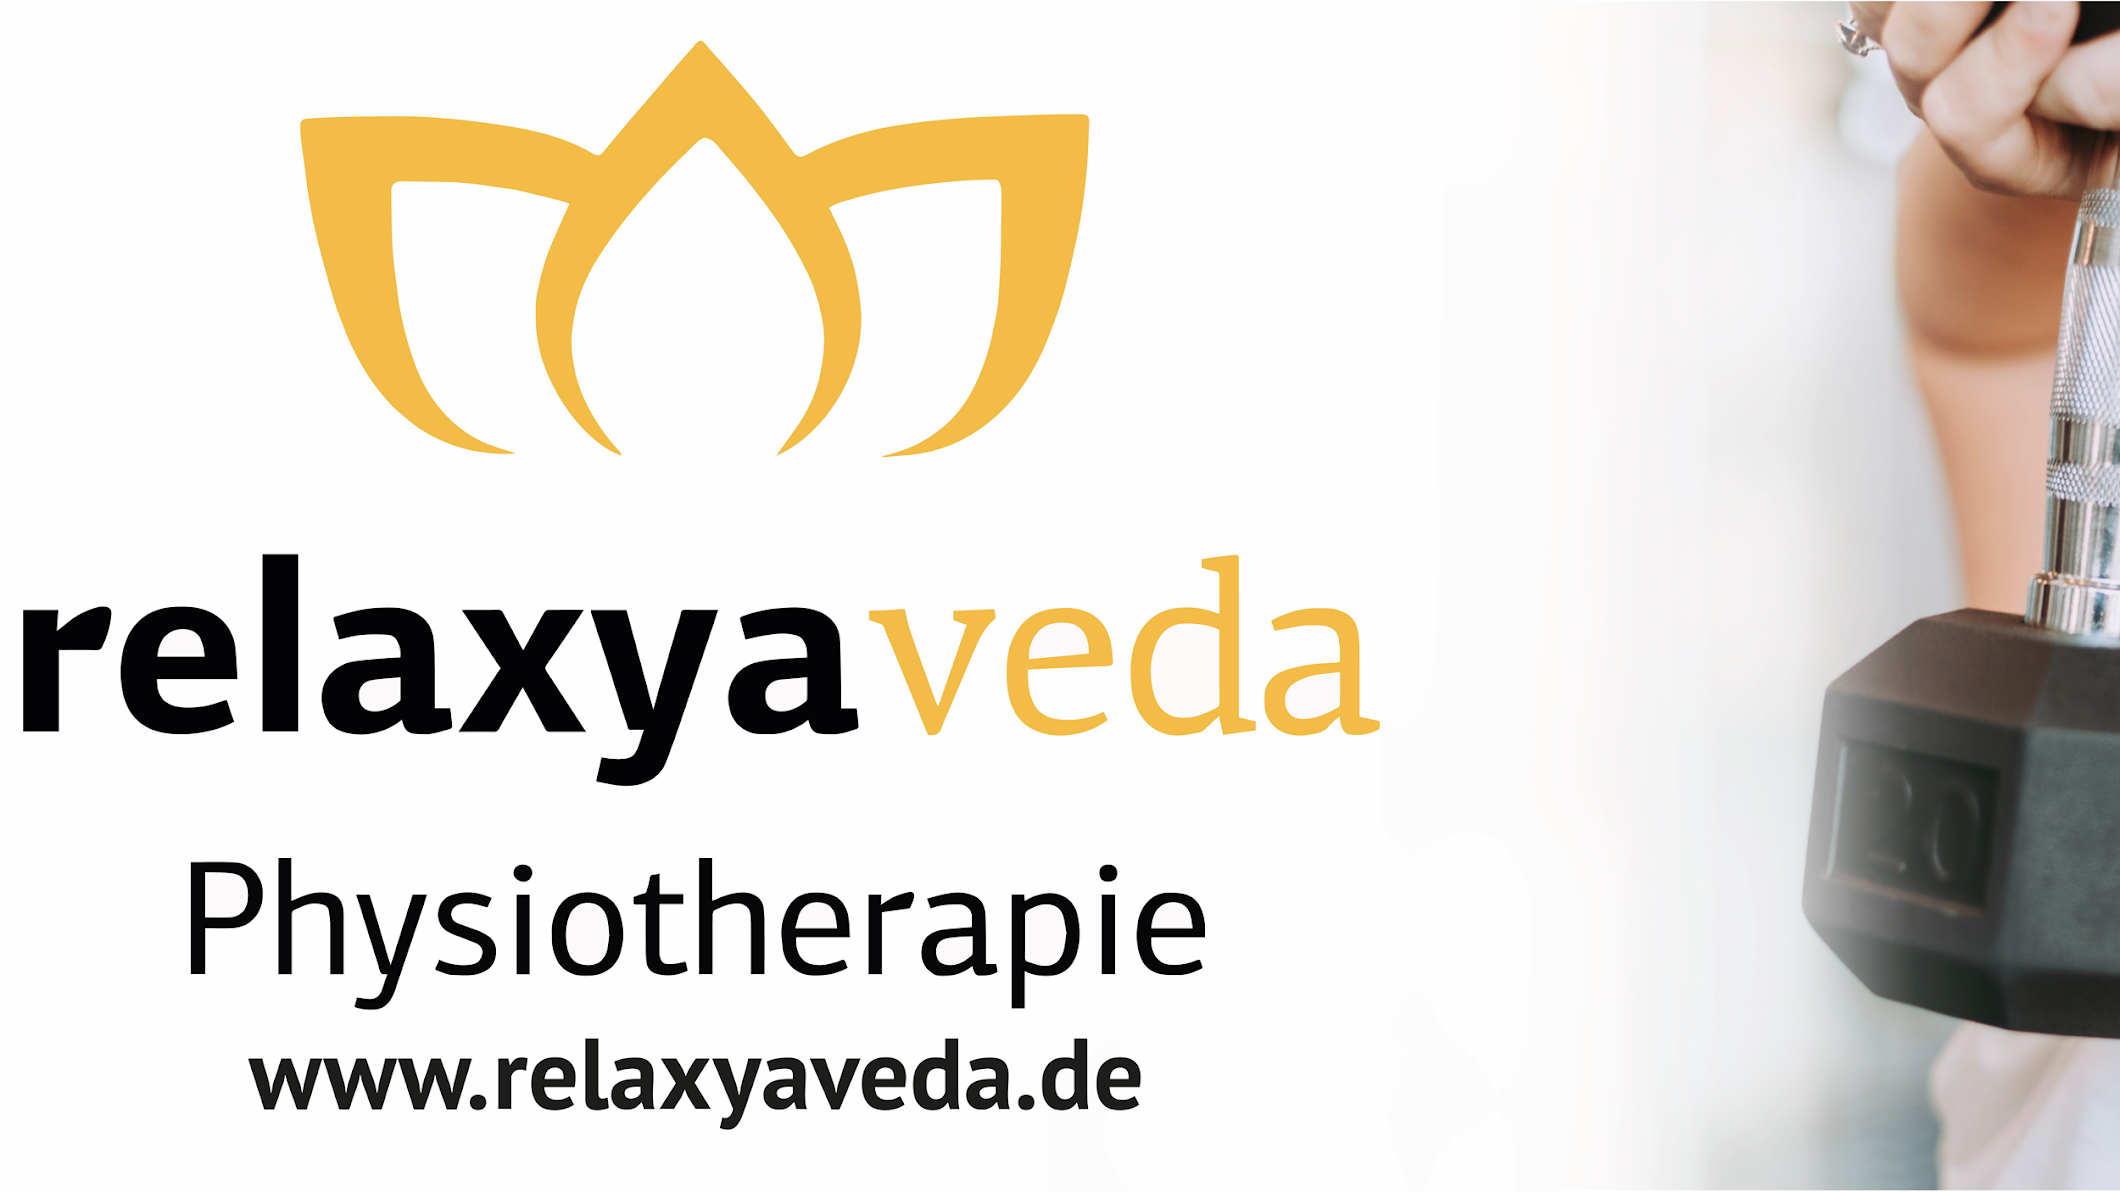 Bild 1 relaxyaveda - Physio- und Ergotherapie in Bielefeld